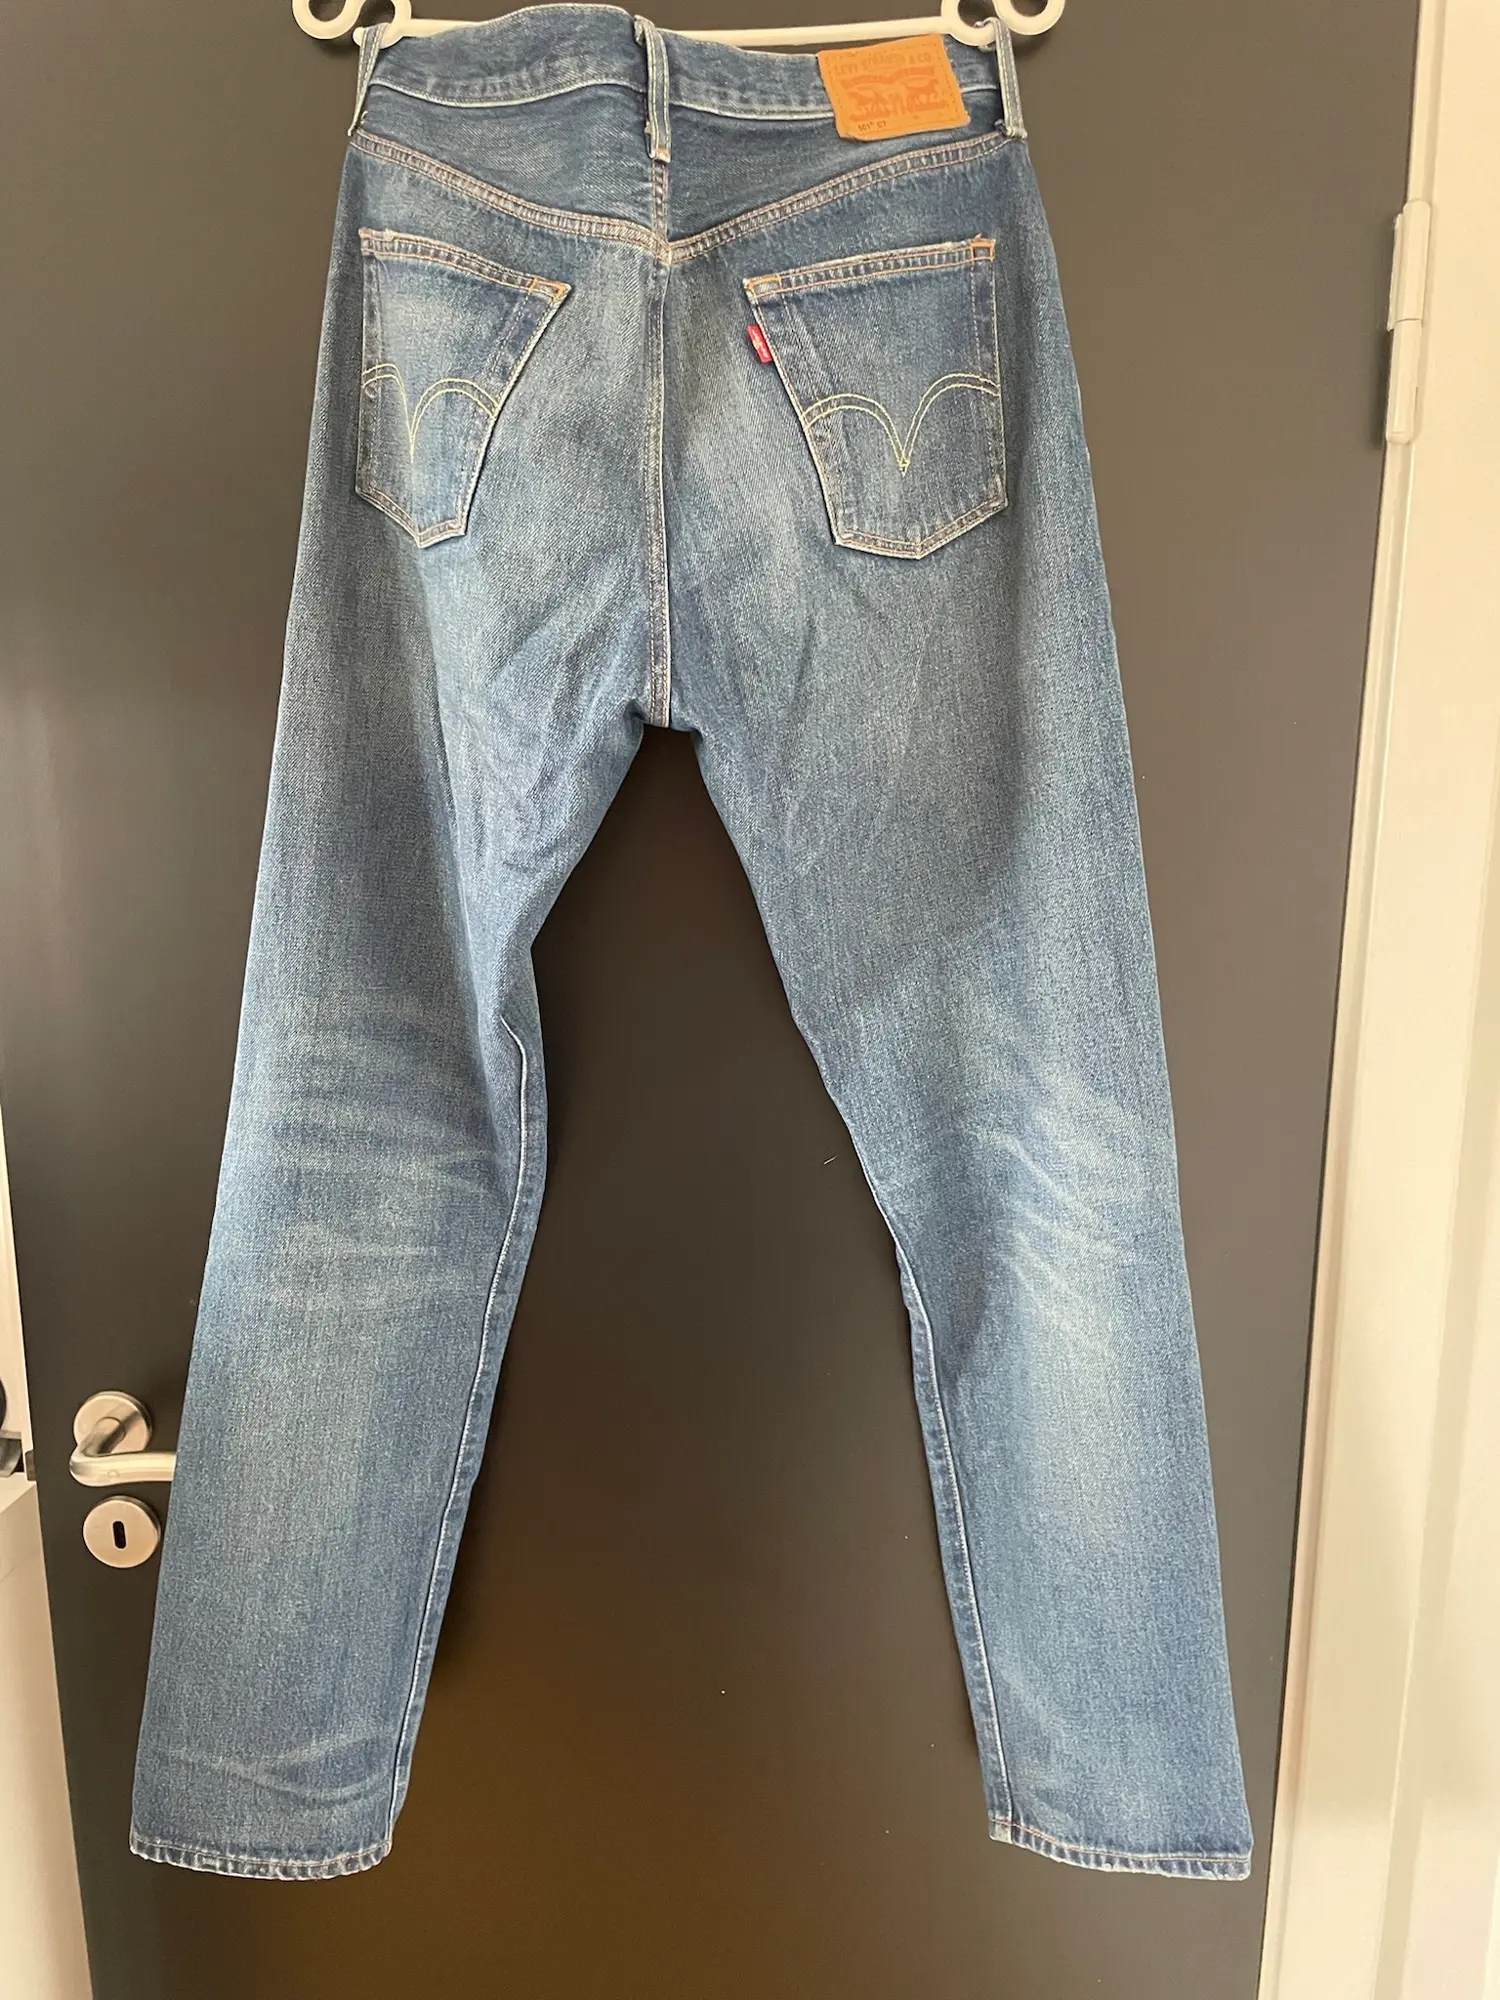 Levi’s jeans